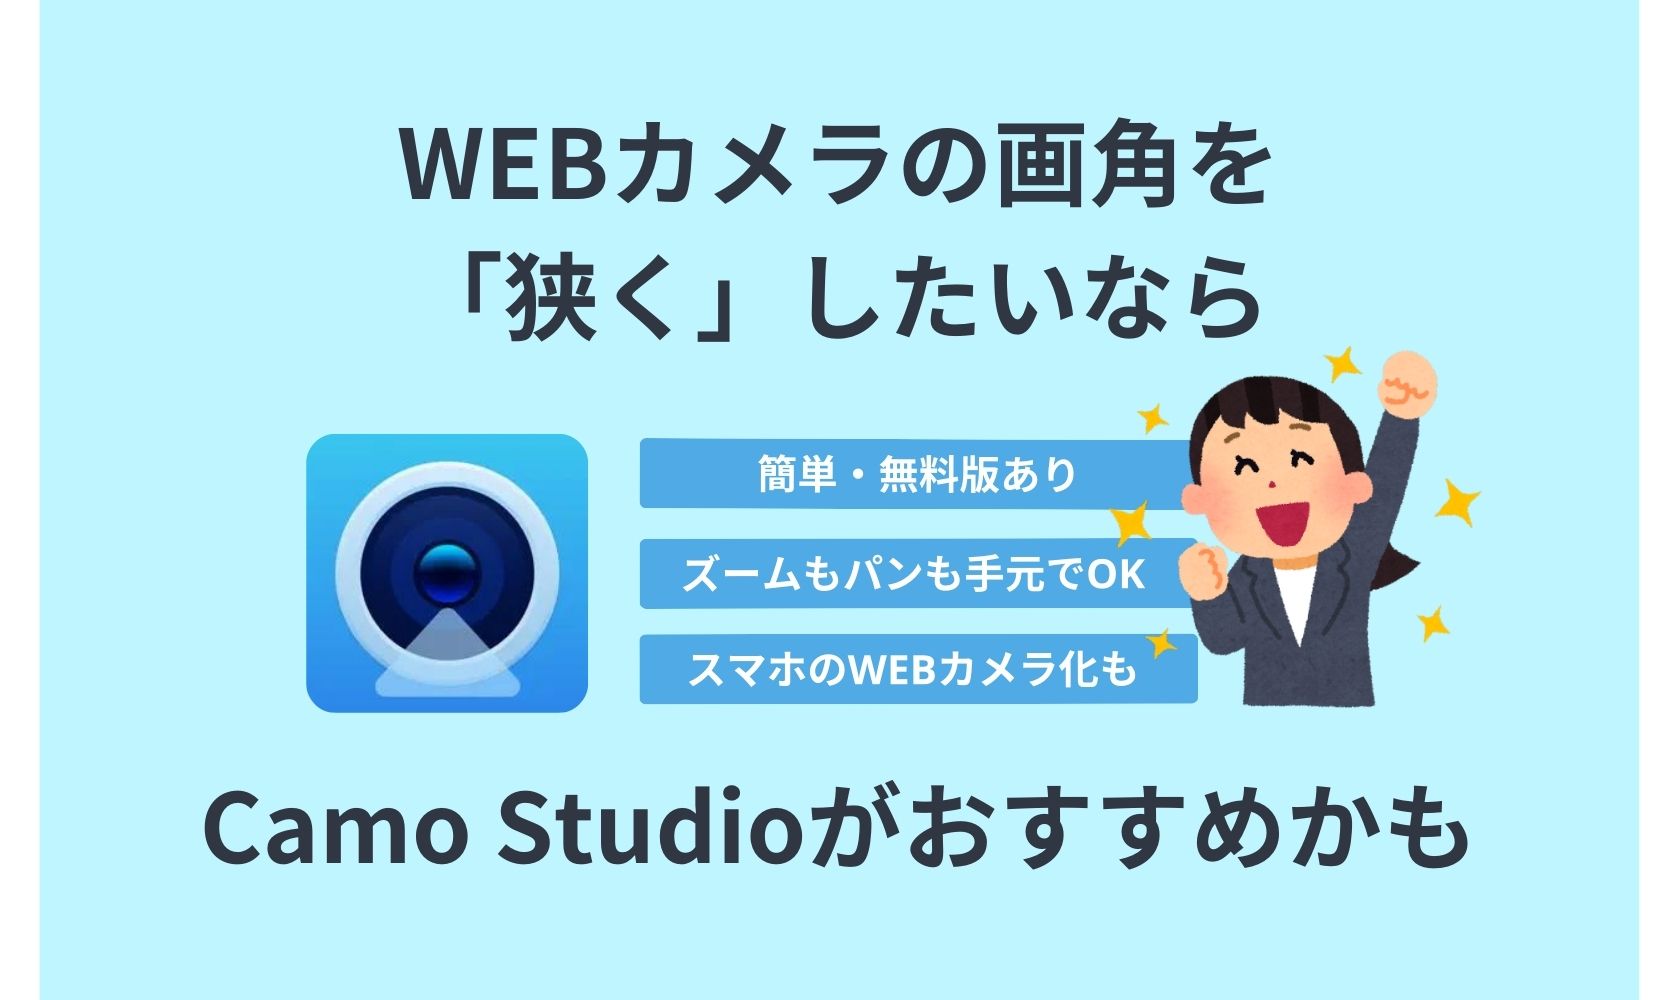 Camo Studio,画角,狭く,WEBカメラ,パソコン